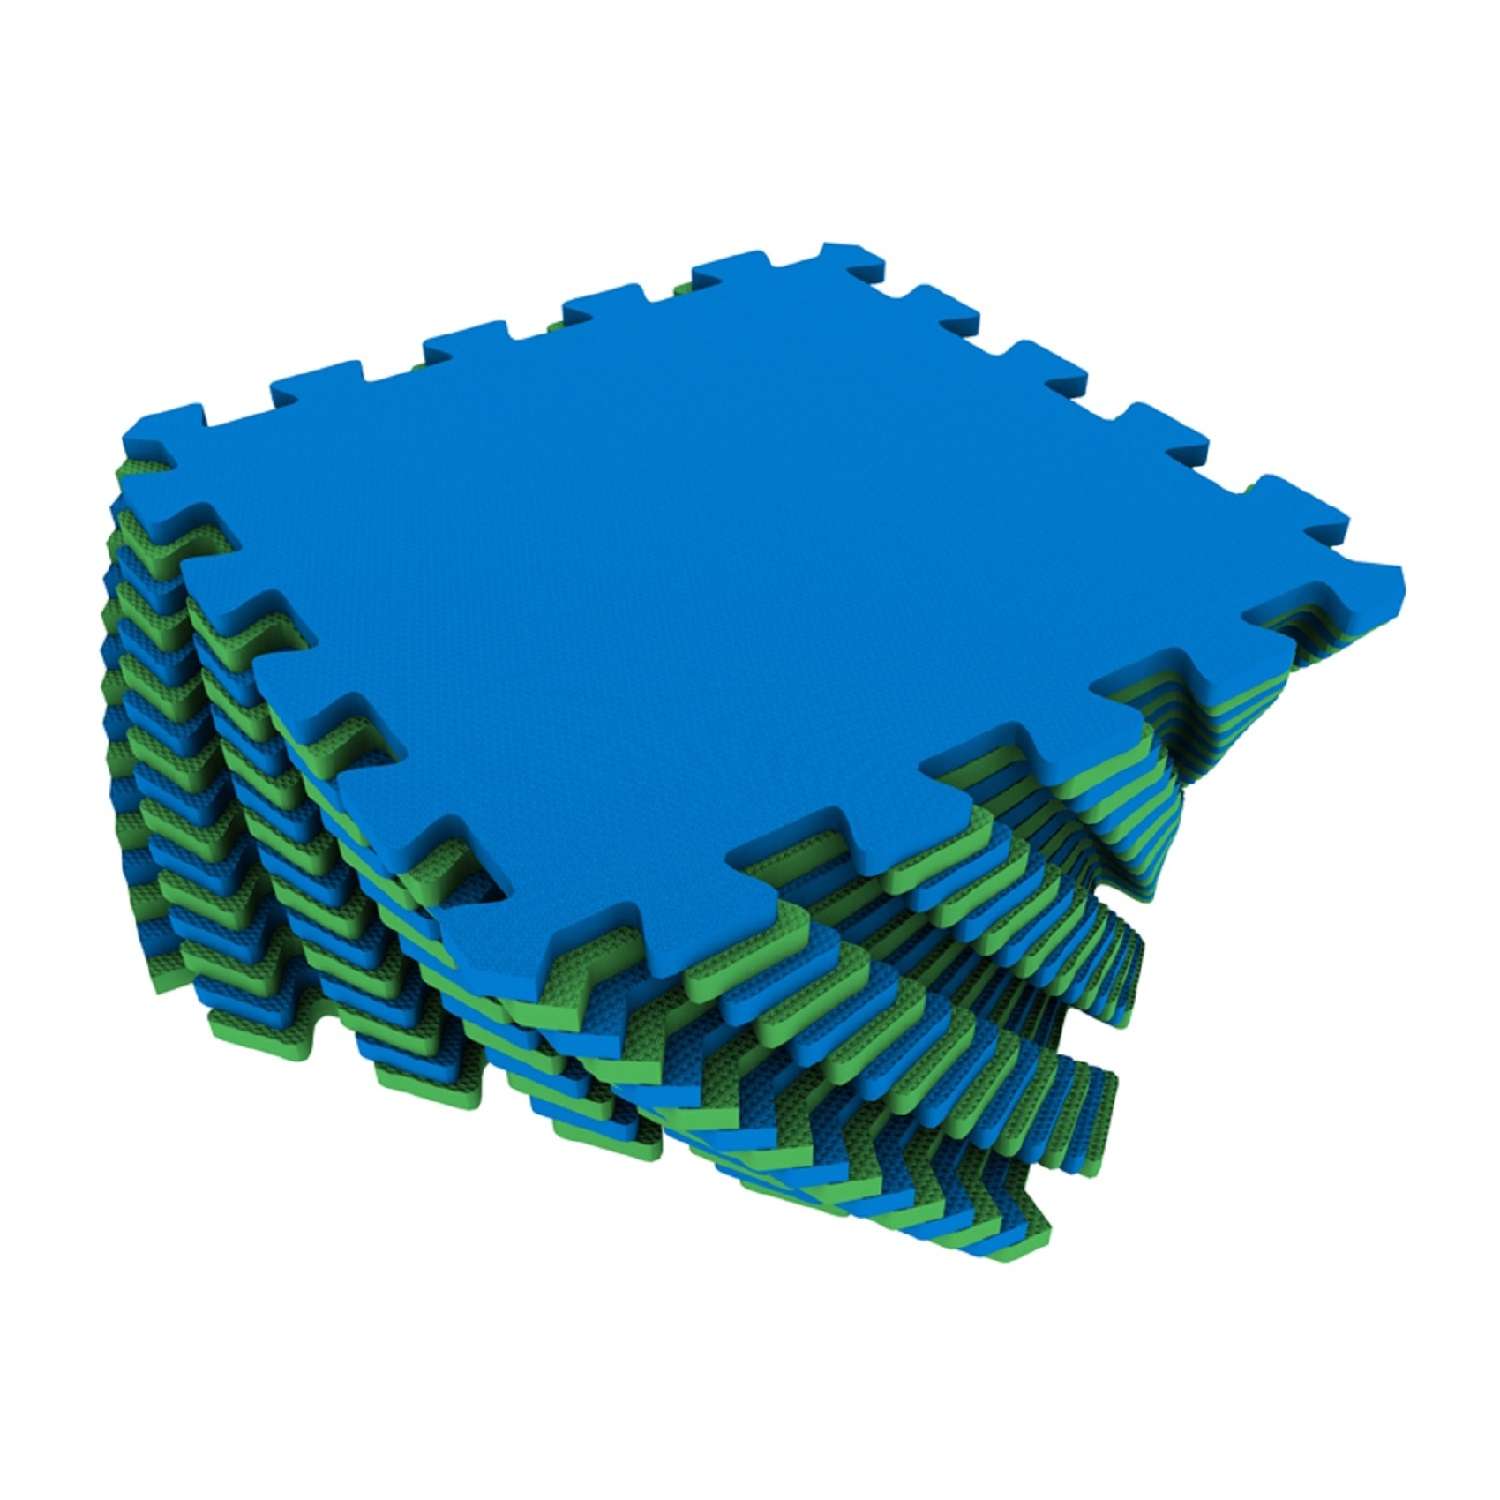 Развивающий детский коврик Eco cover игровой для ползания мягкий пол сине-зеленый 25х25 - фото 1